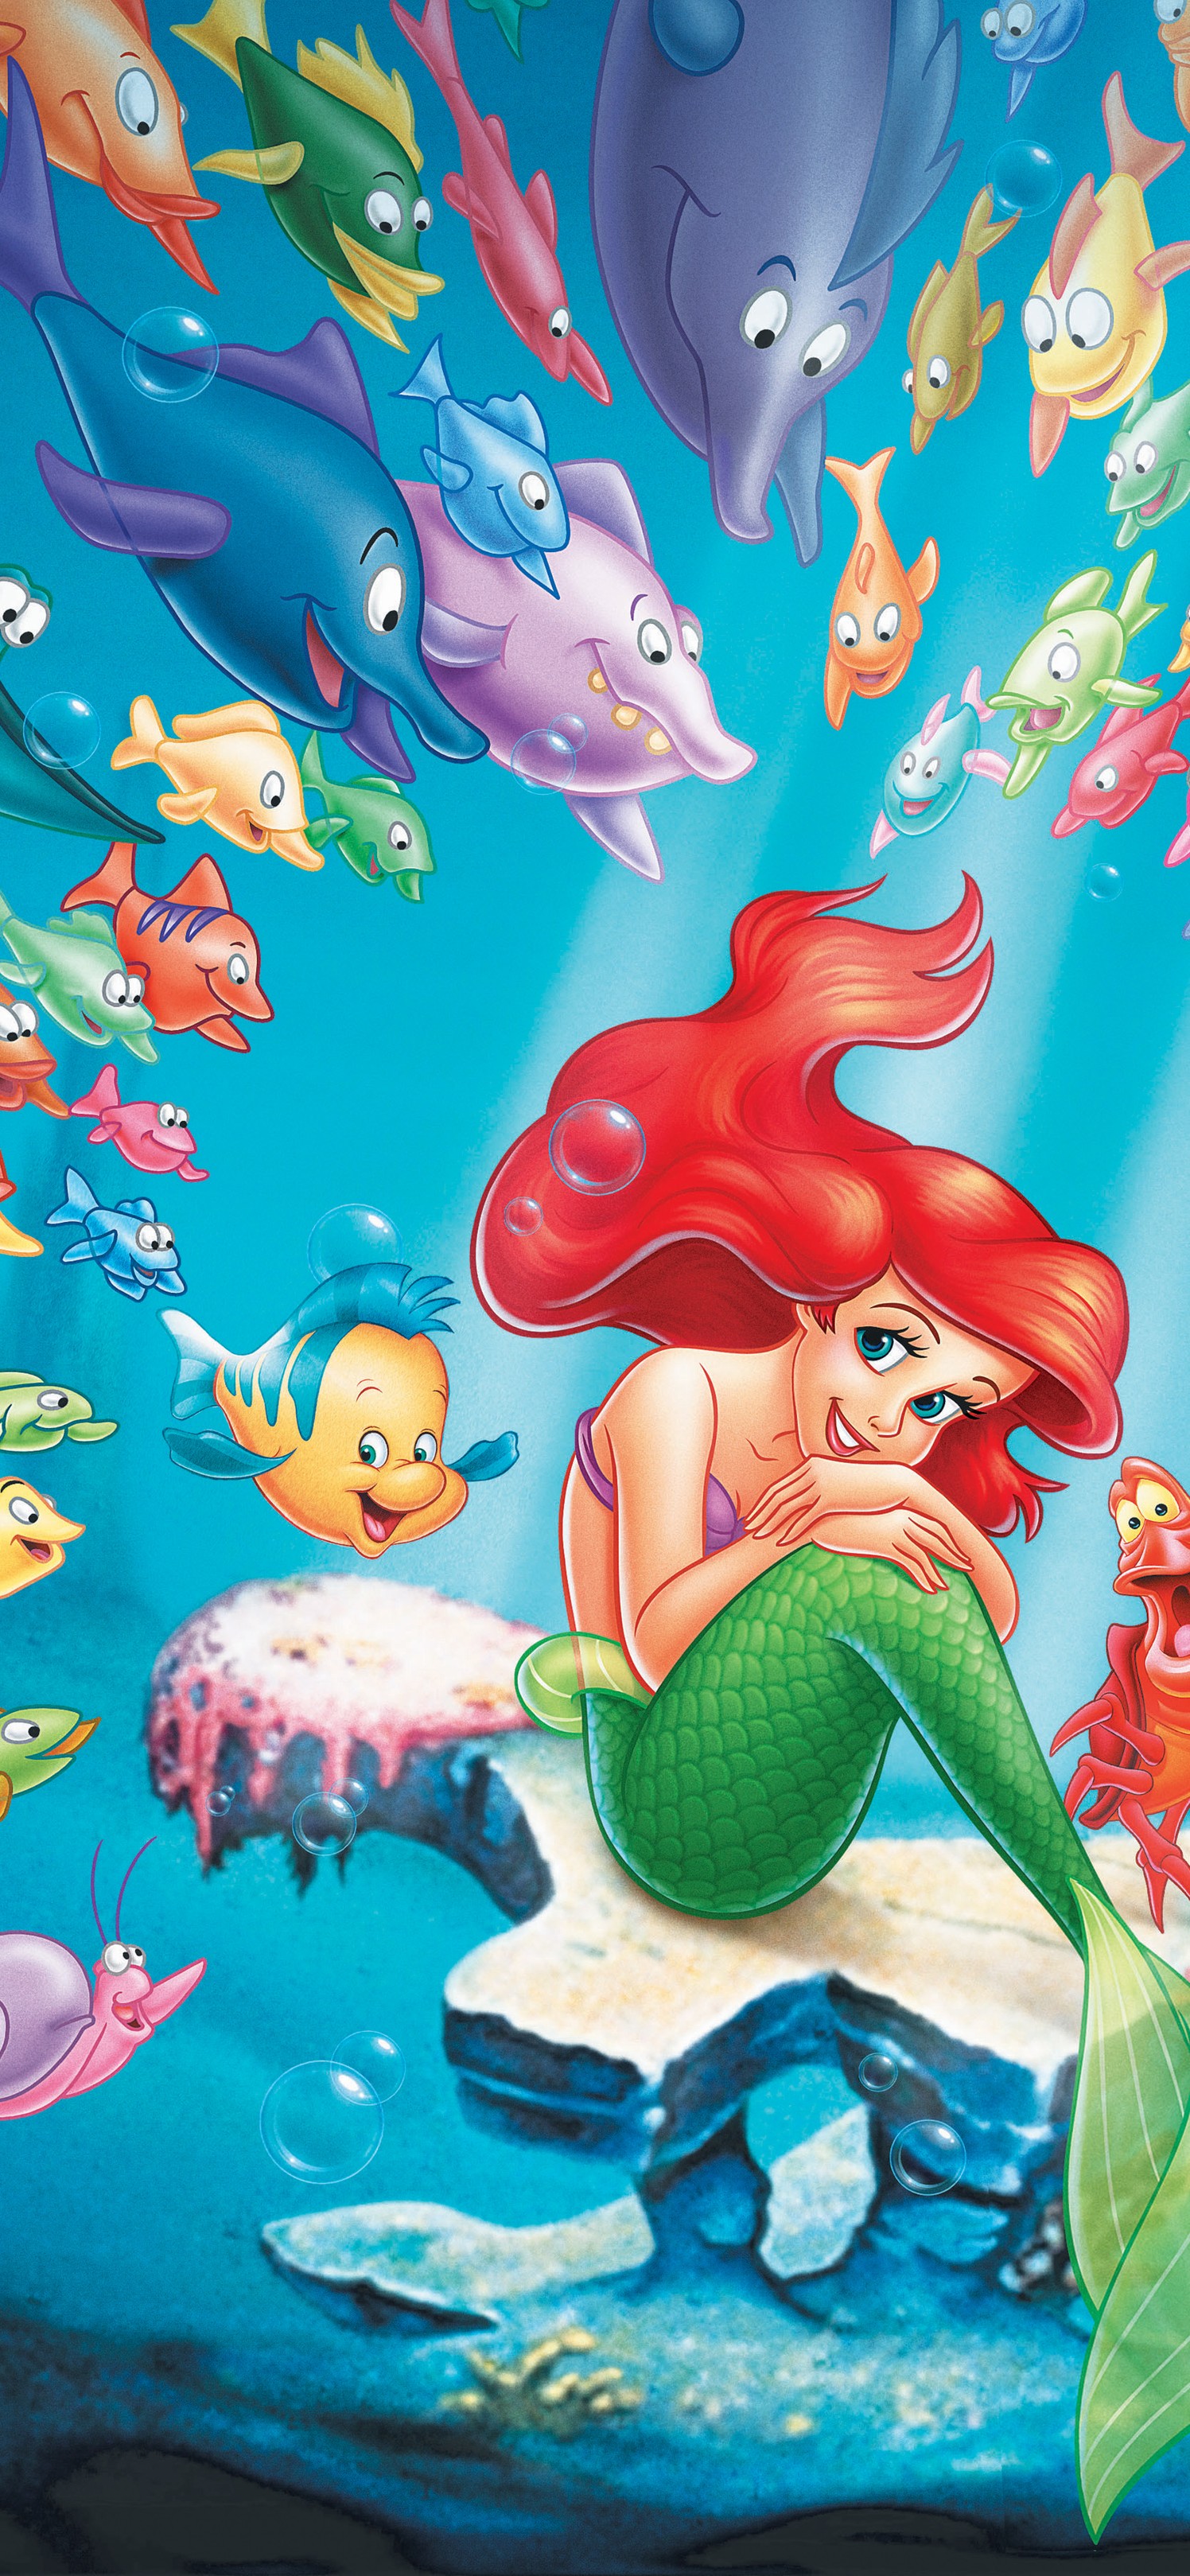 迪士尼动漫“小美人鱼”插画手机壁纸